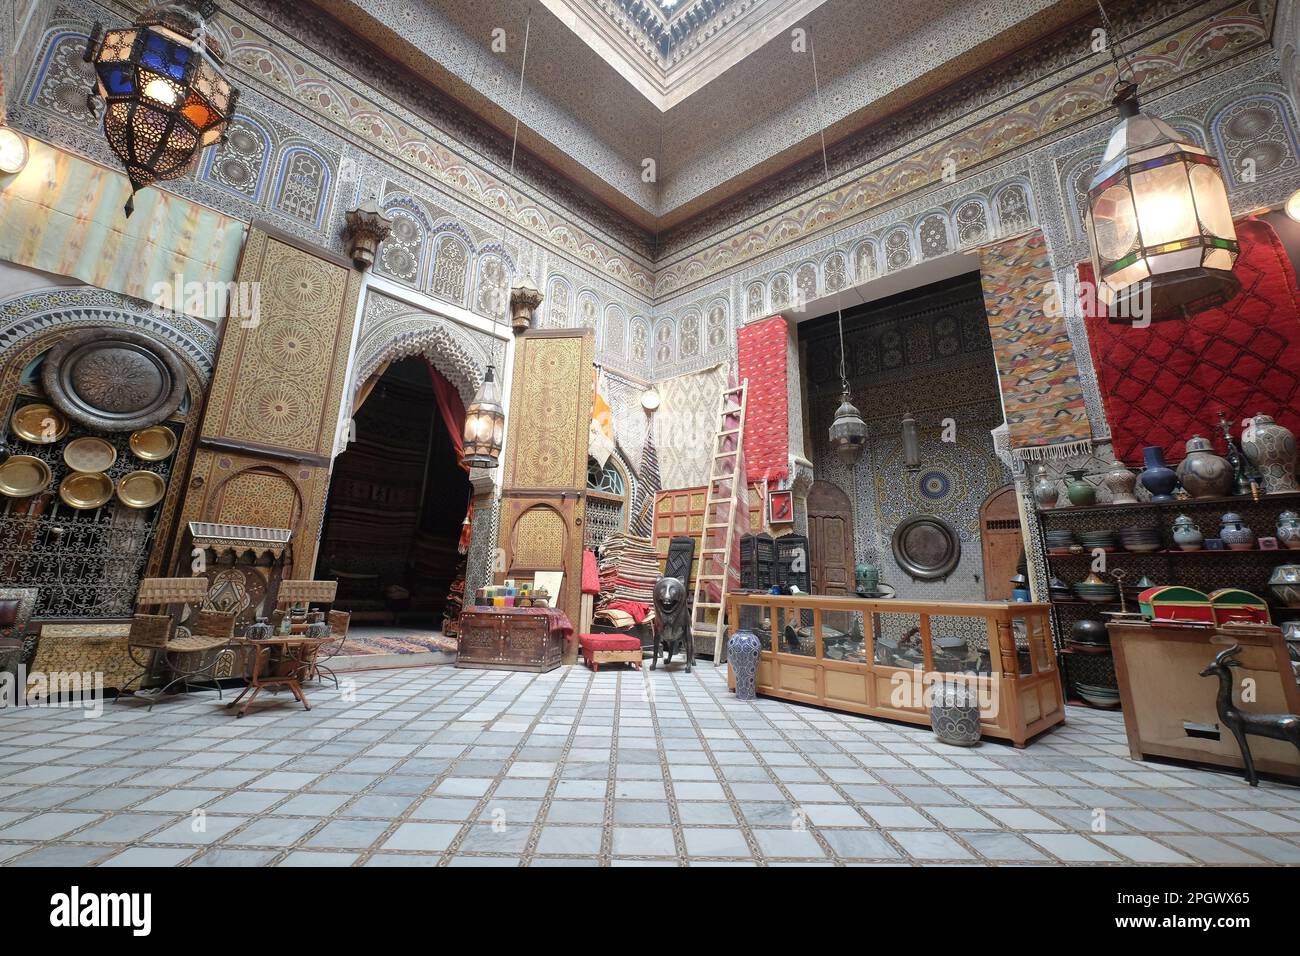 Intérieur d'une chambre à Fès Maroc. Décoration intérieure orientale traditionnelle avec arches et motifs géométriques. Banque D'Images